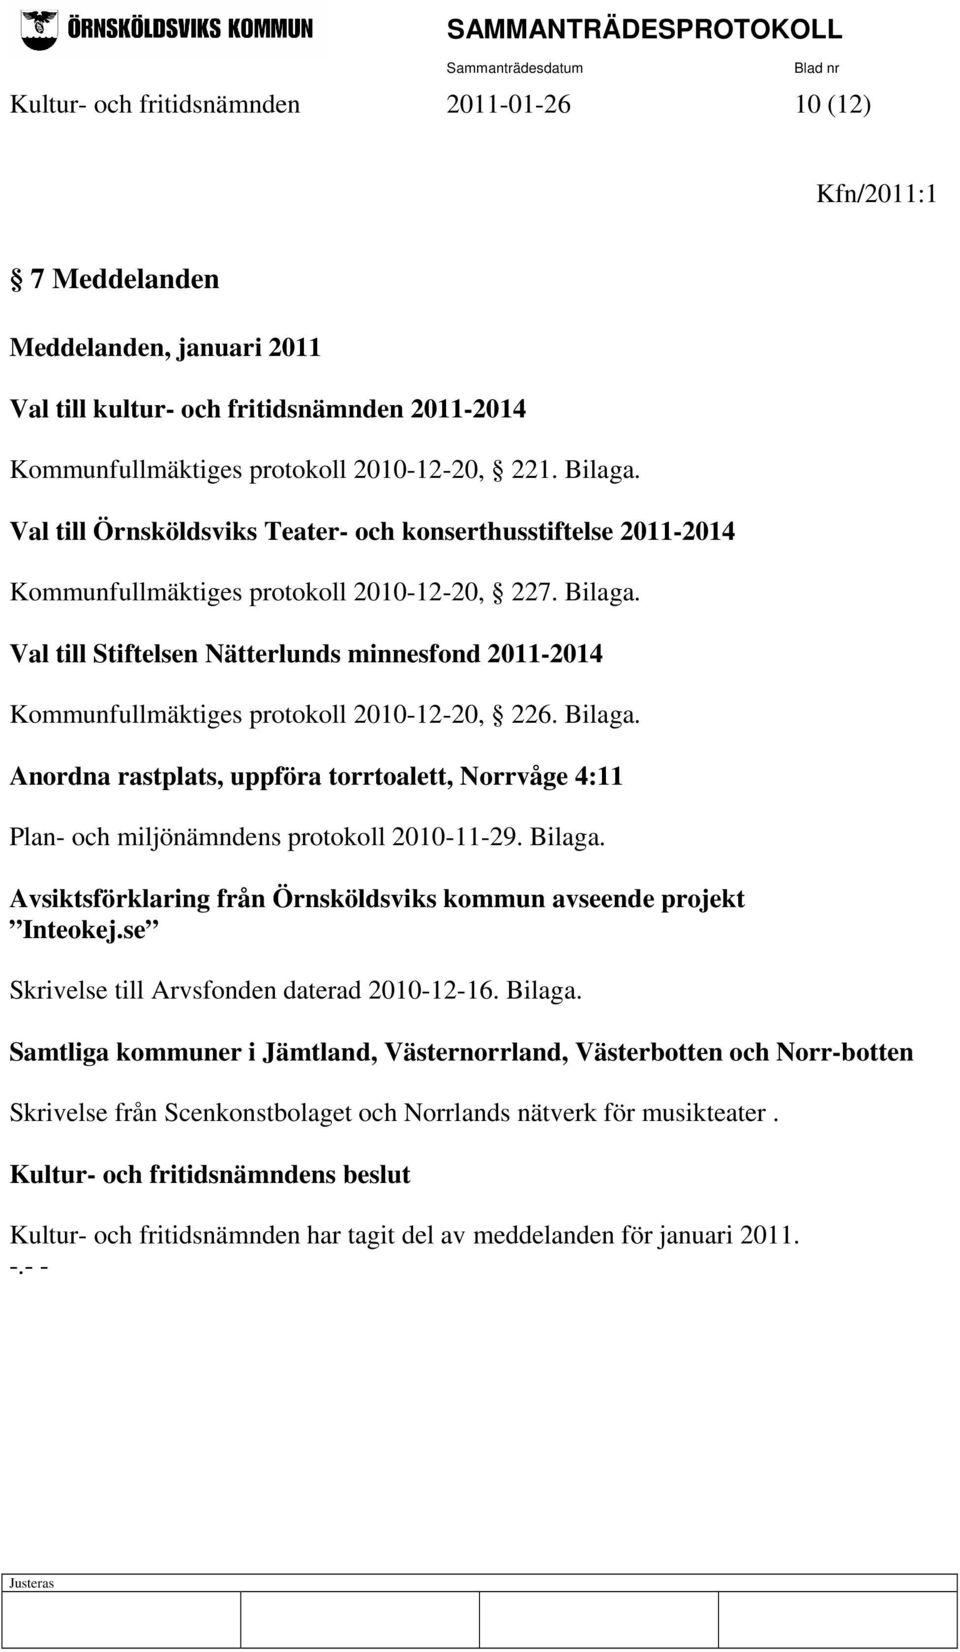 Val till Stiftelsen Nätterlunds minnesfond 2011-2014 Kommunfullmäktiges protokoll 2010-12-20, 226. Bilaga.